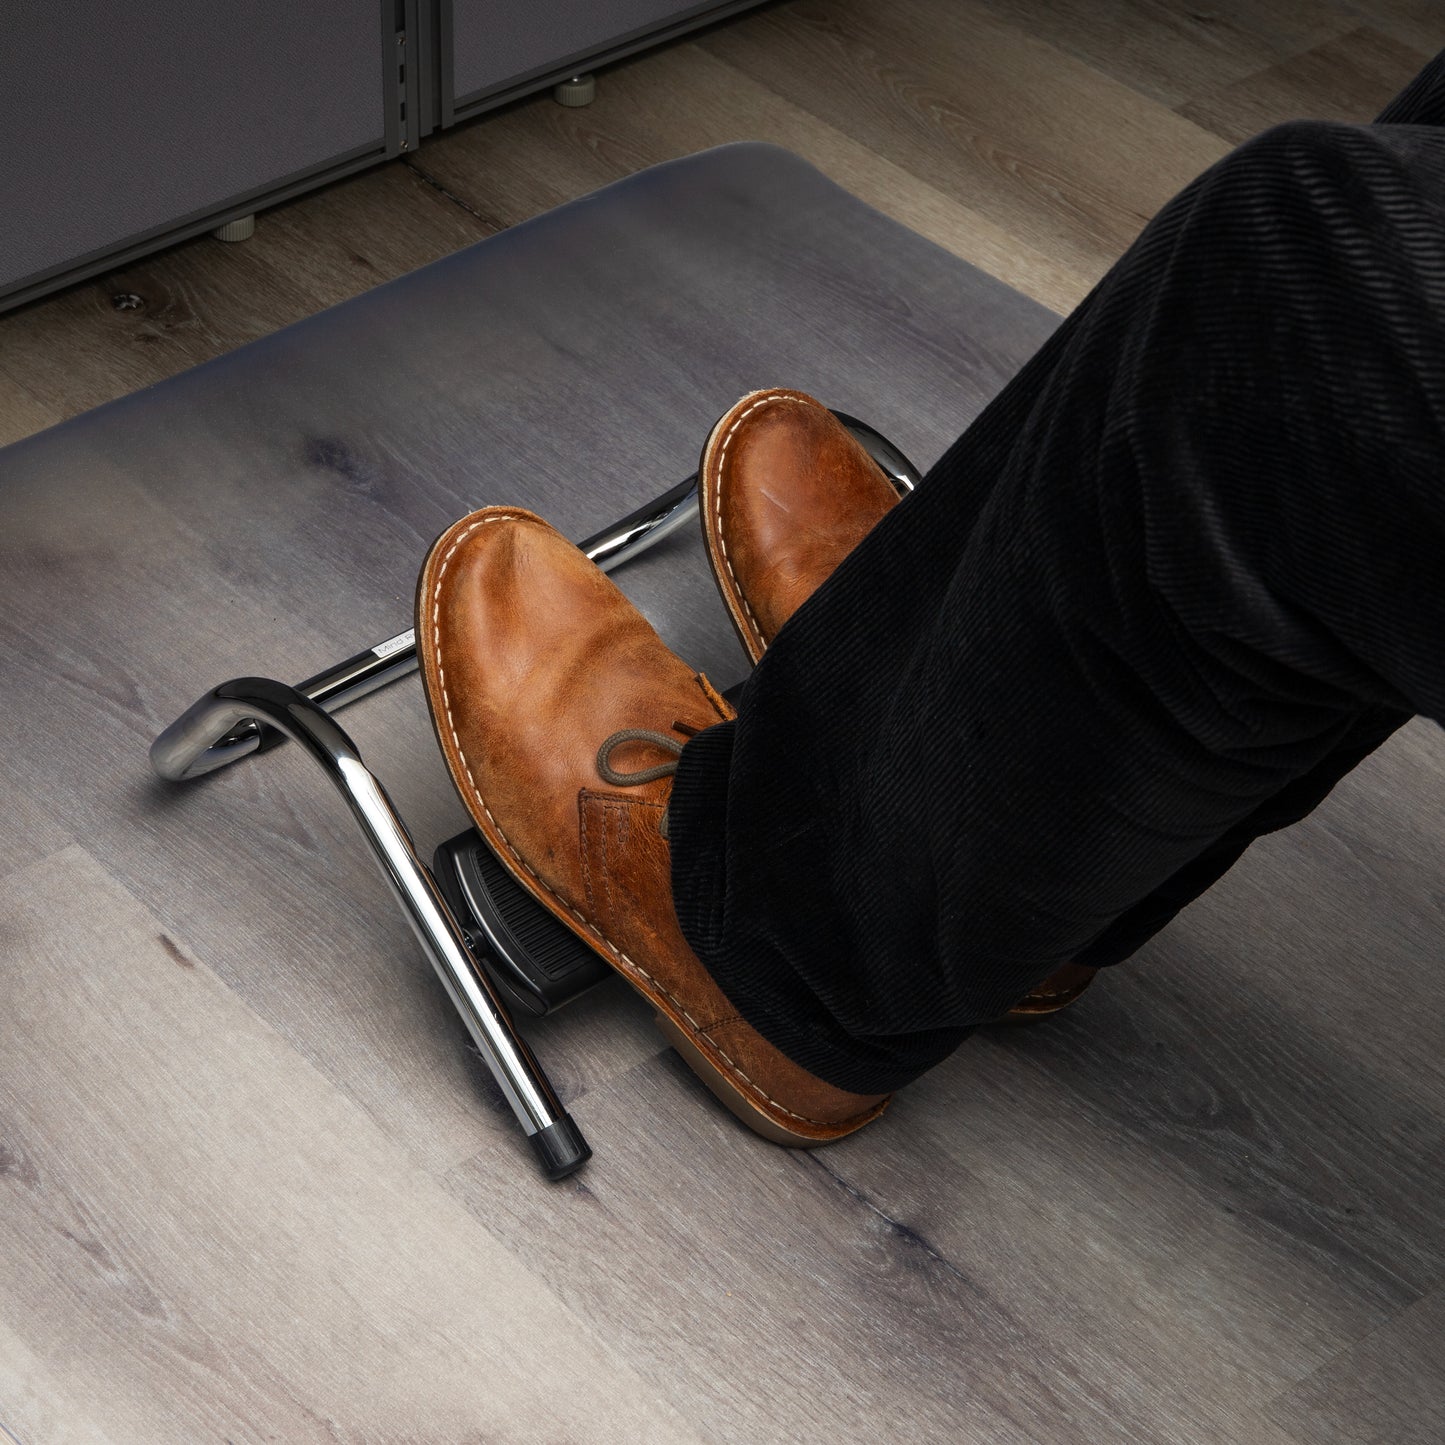 Mind Reader Black Metal Adjustable Foot Rest for Under Desk